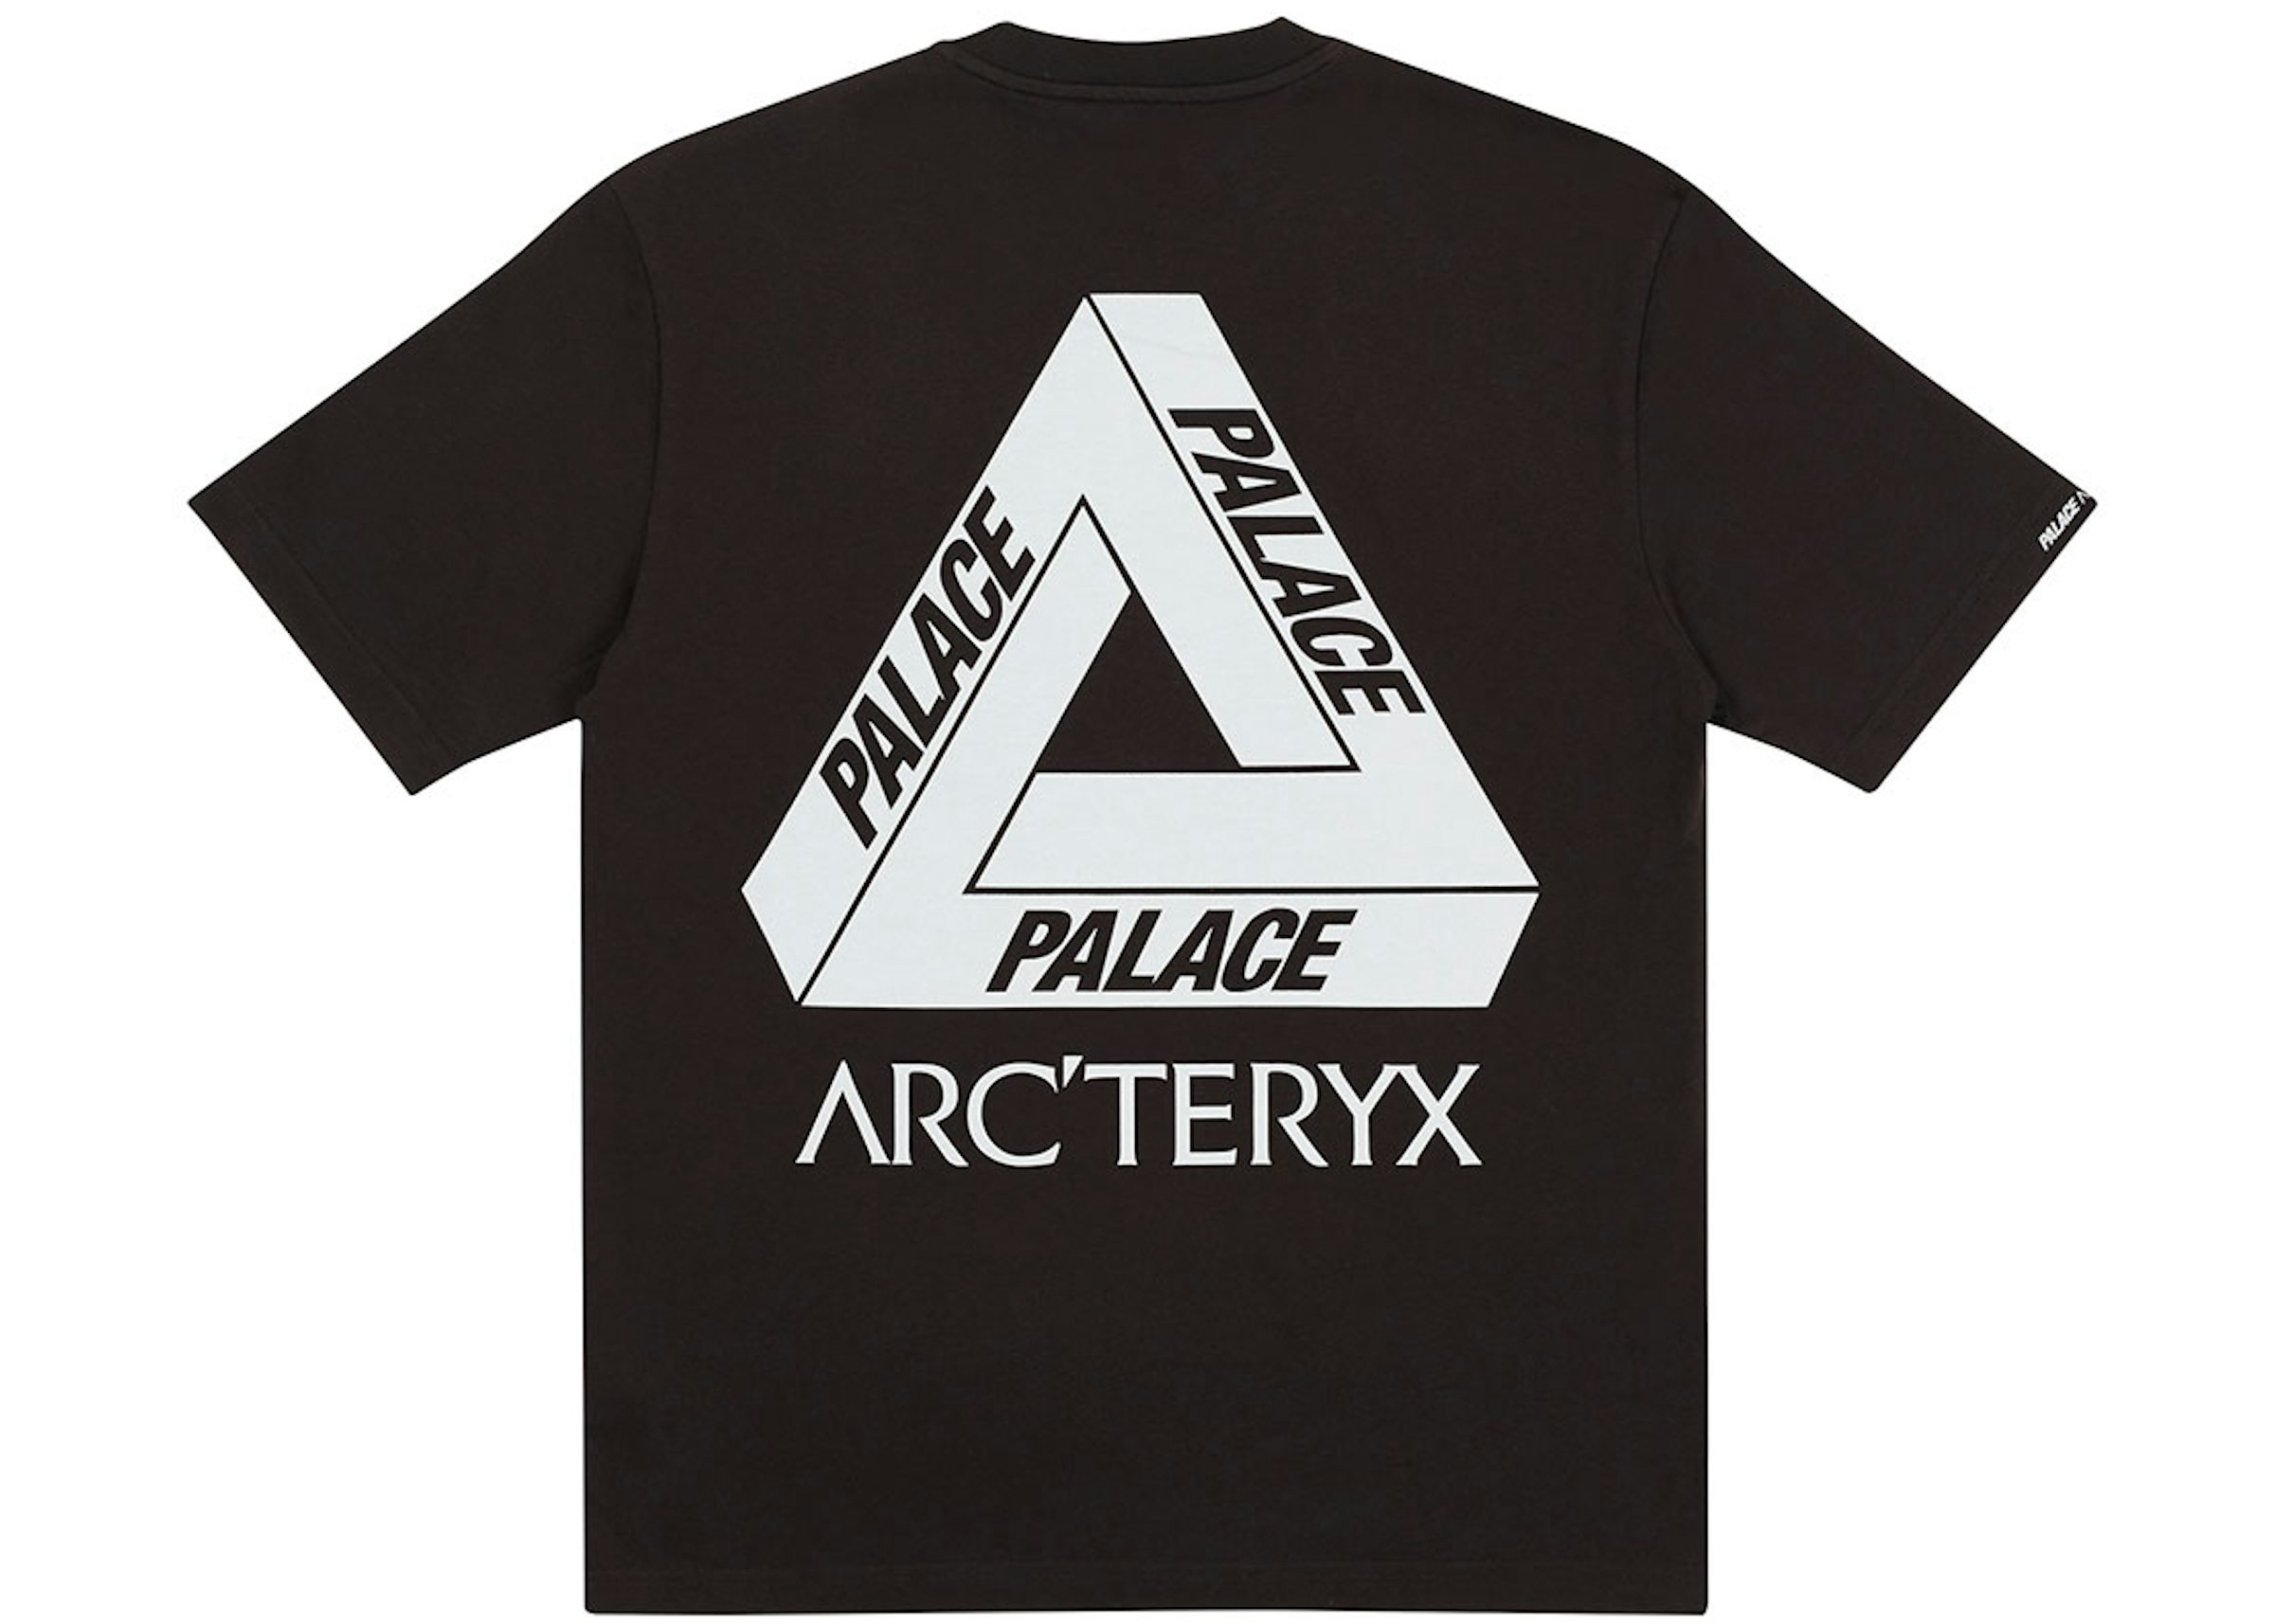 Arc'teryx Fashion Collabs, Palace x Arc'teryx & Jil Sander x Arc'teryx